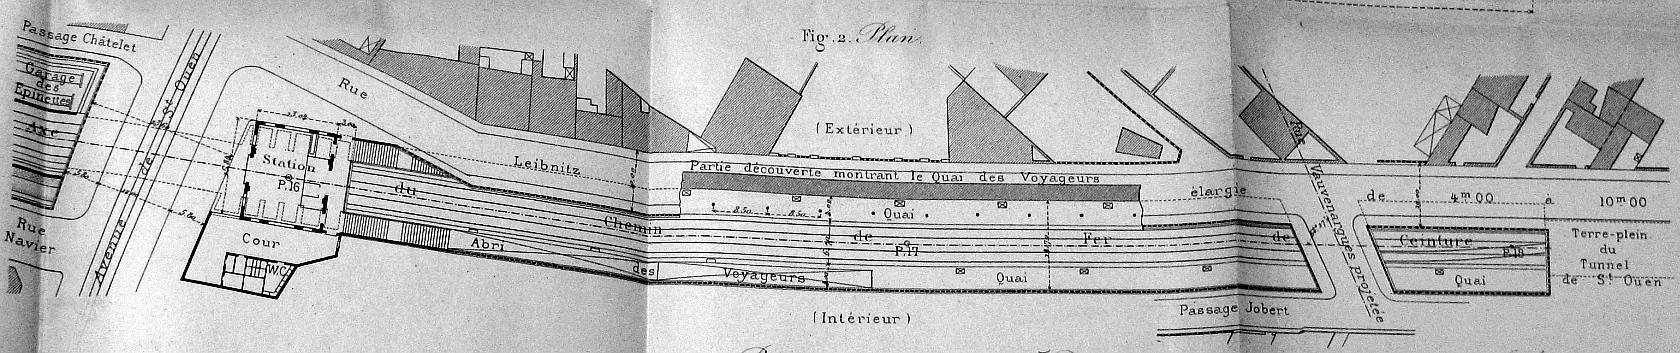 Plan de masse de la station de l'avenue de Saint-Ouen après la suppression des passages à niveau en 1889 